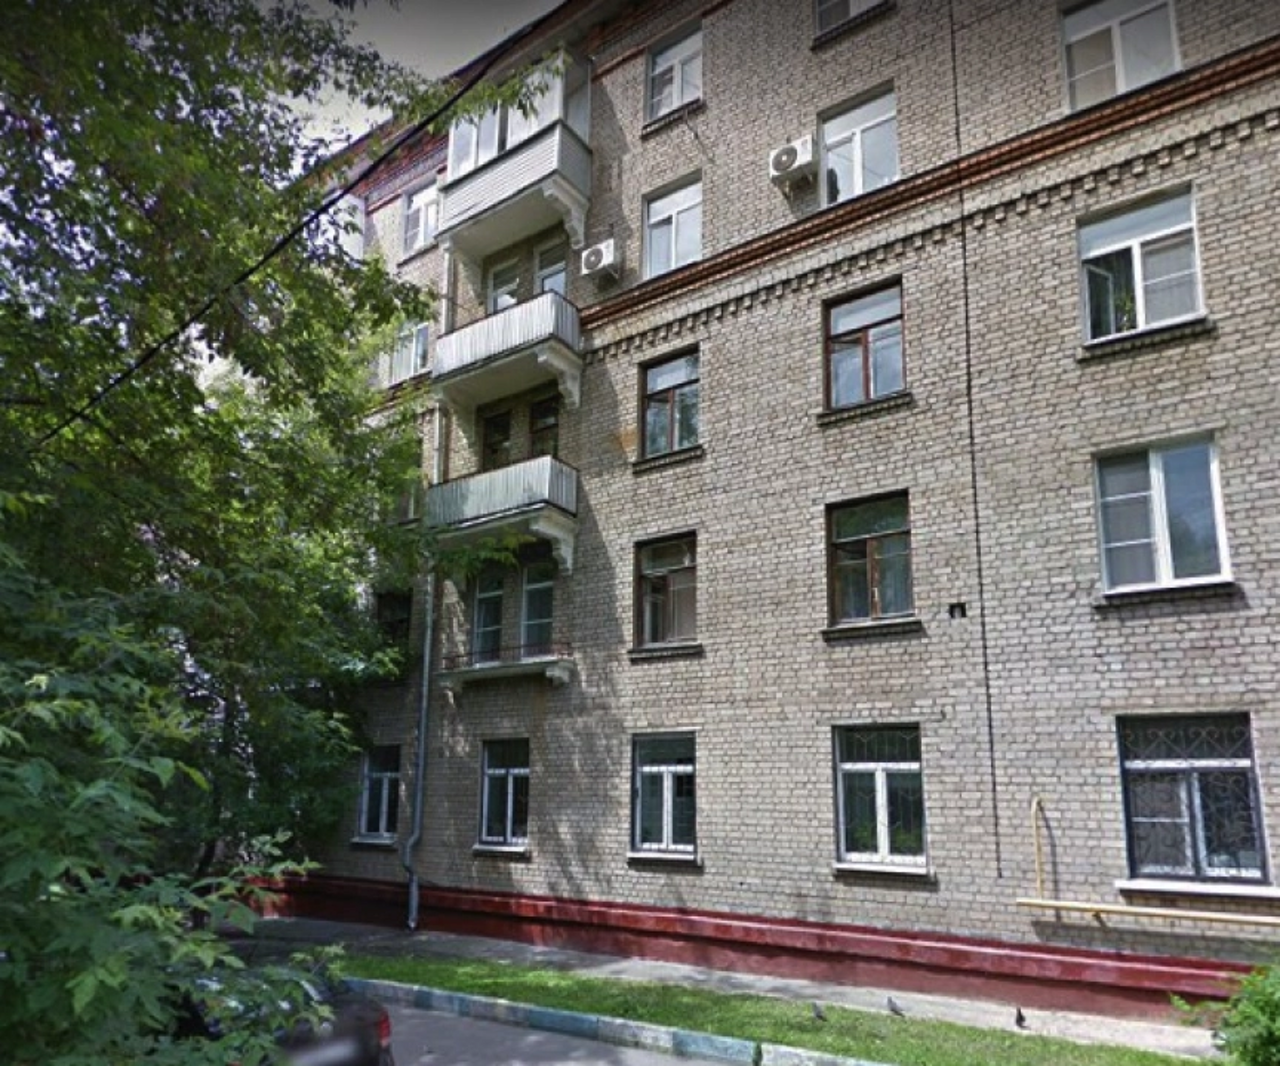 Продам квартиру в Москве по адресу Каширское шоссе, 56к2, площадь 201 квм Недвижимость Москва (Россия)  Район отличается развитой социальной инфраструктурой, удобной транспортной доступностью до центра города и других районов столицы